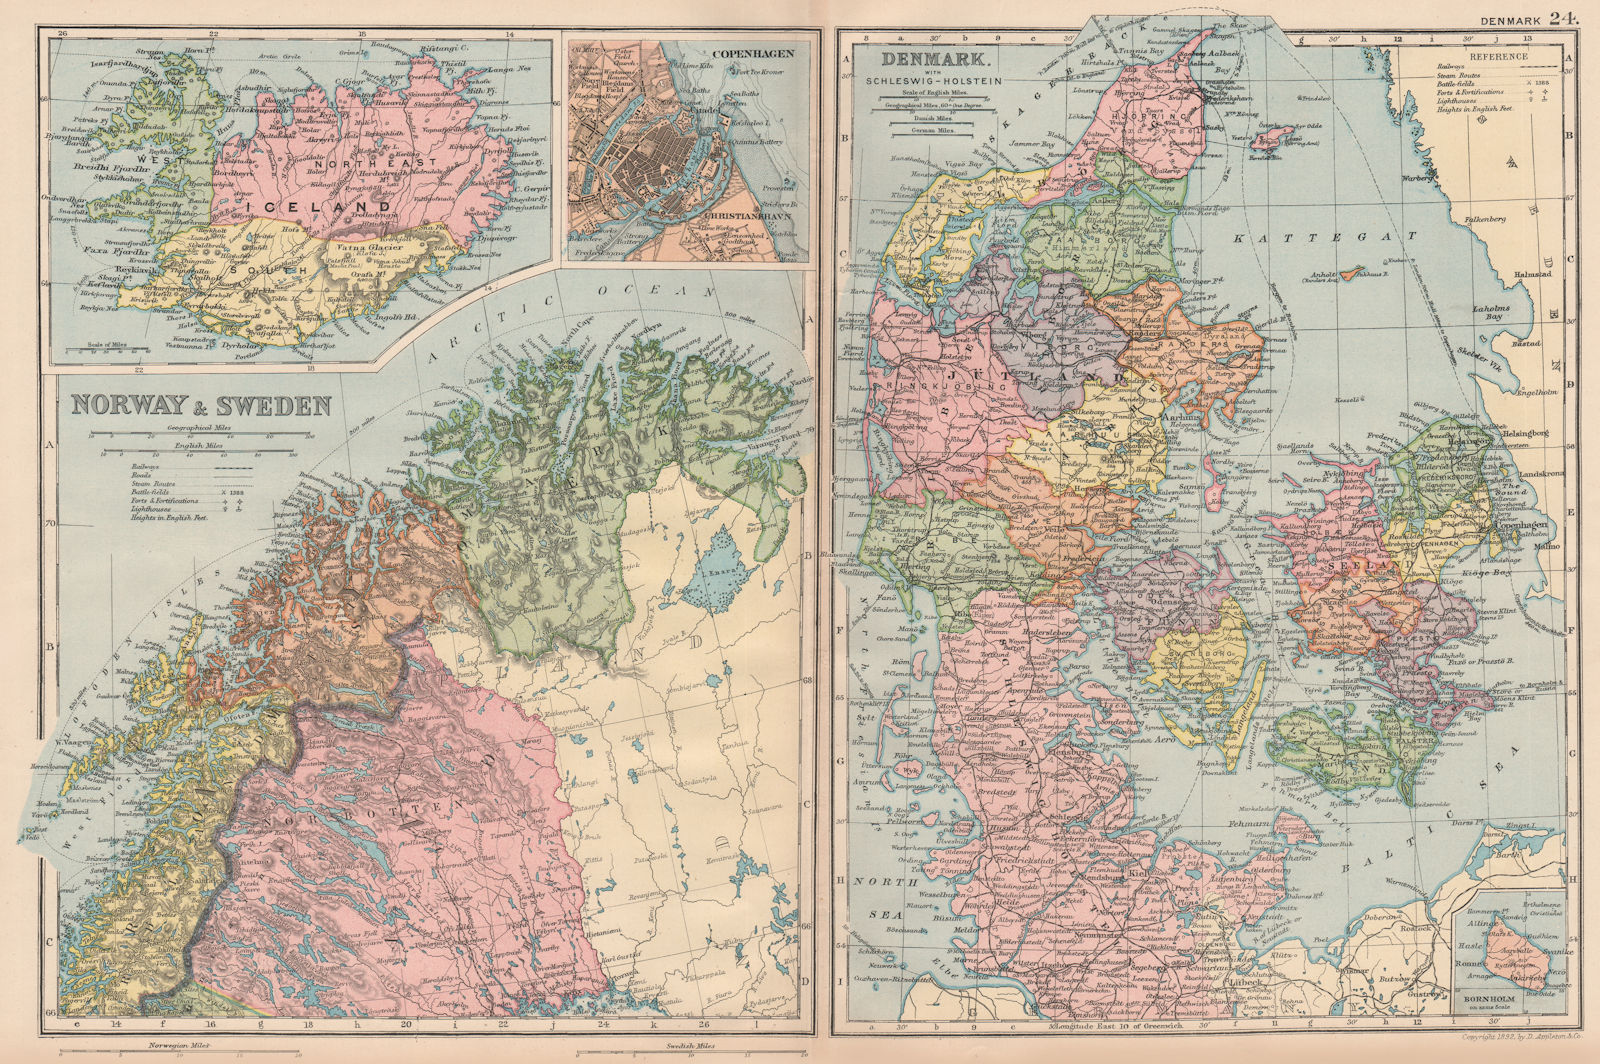 SCANDINAVIA. Lapland Iceland Denmark Copenhagen. Norway & Sweden. BACON 1893 map